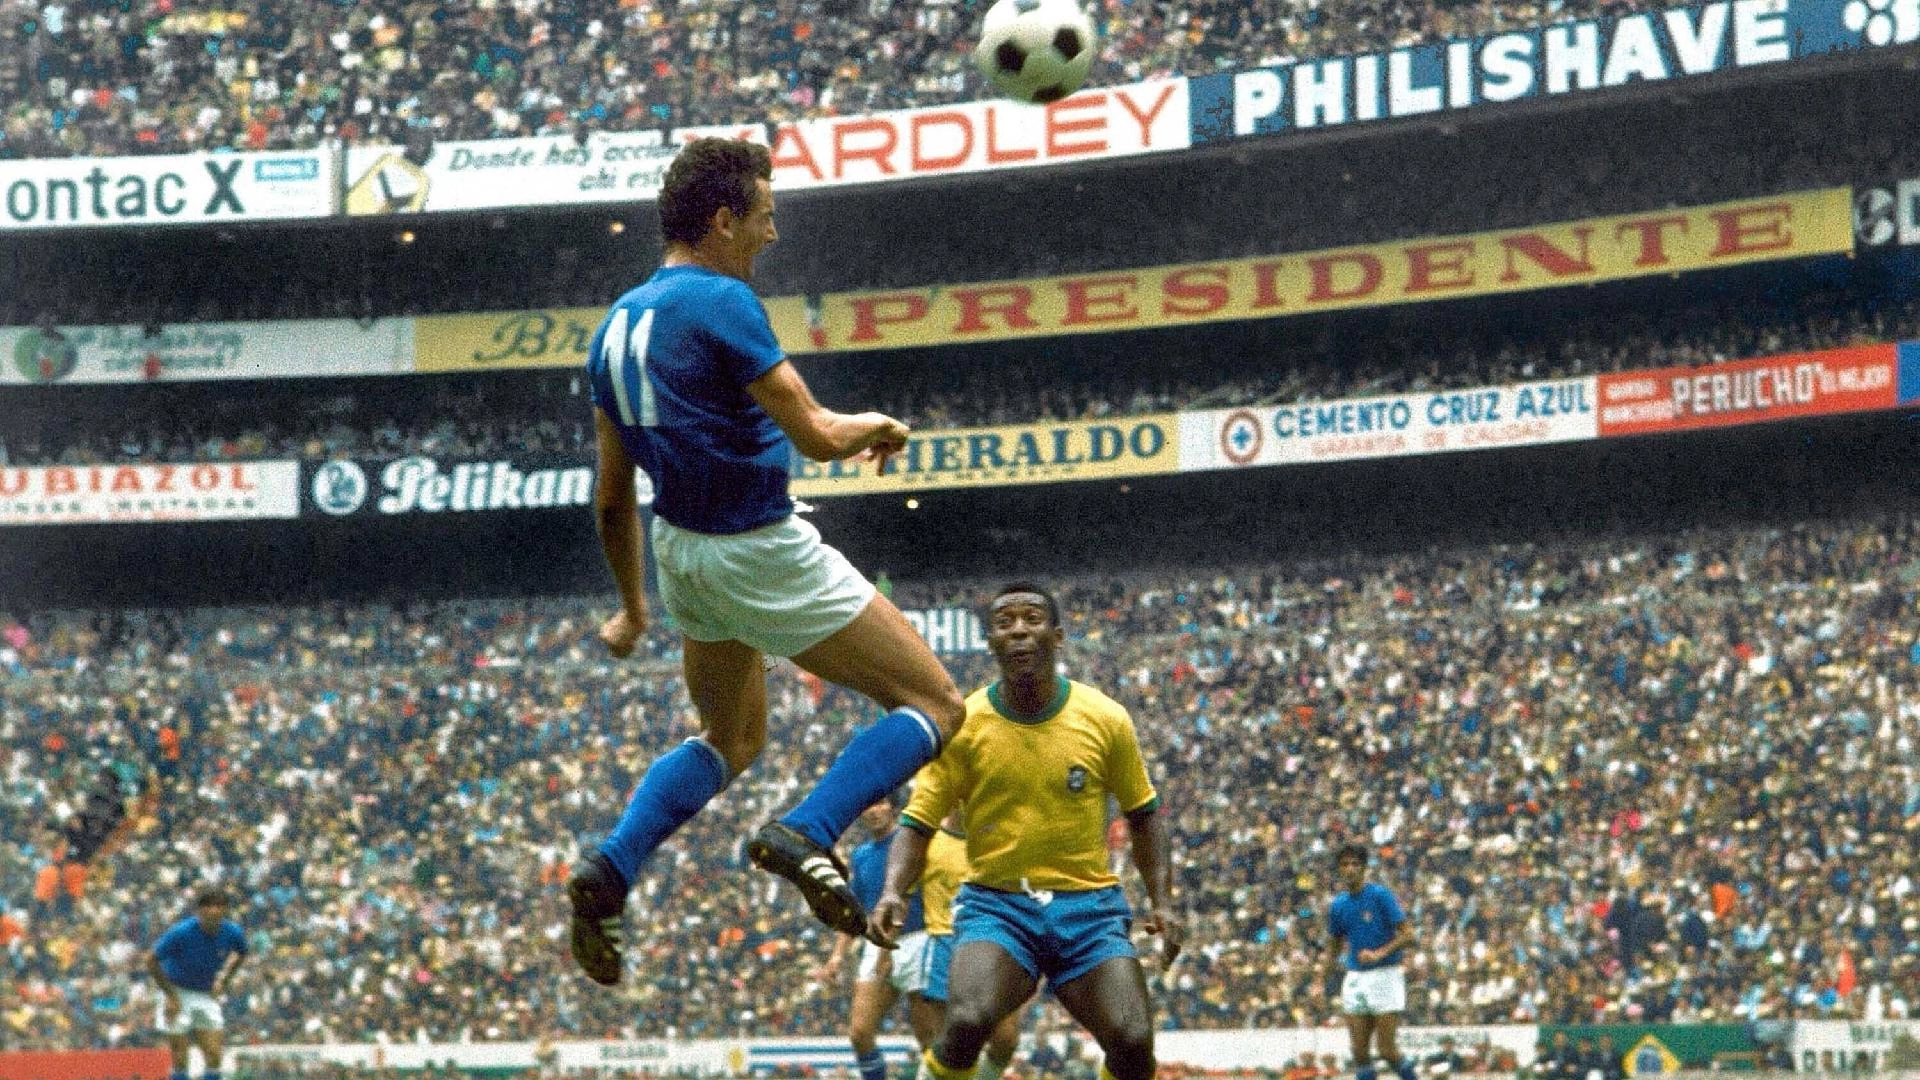 Em 21 de junho de 1970, decisão da Copa do México, no Estádio Azteca. Gigi Riva sobe para cabecear observado por Pelé. Foto: Reprodução